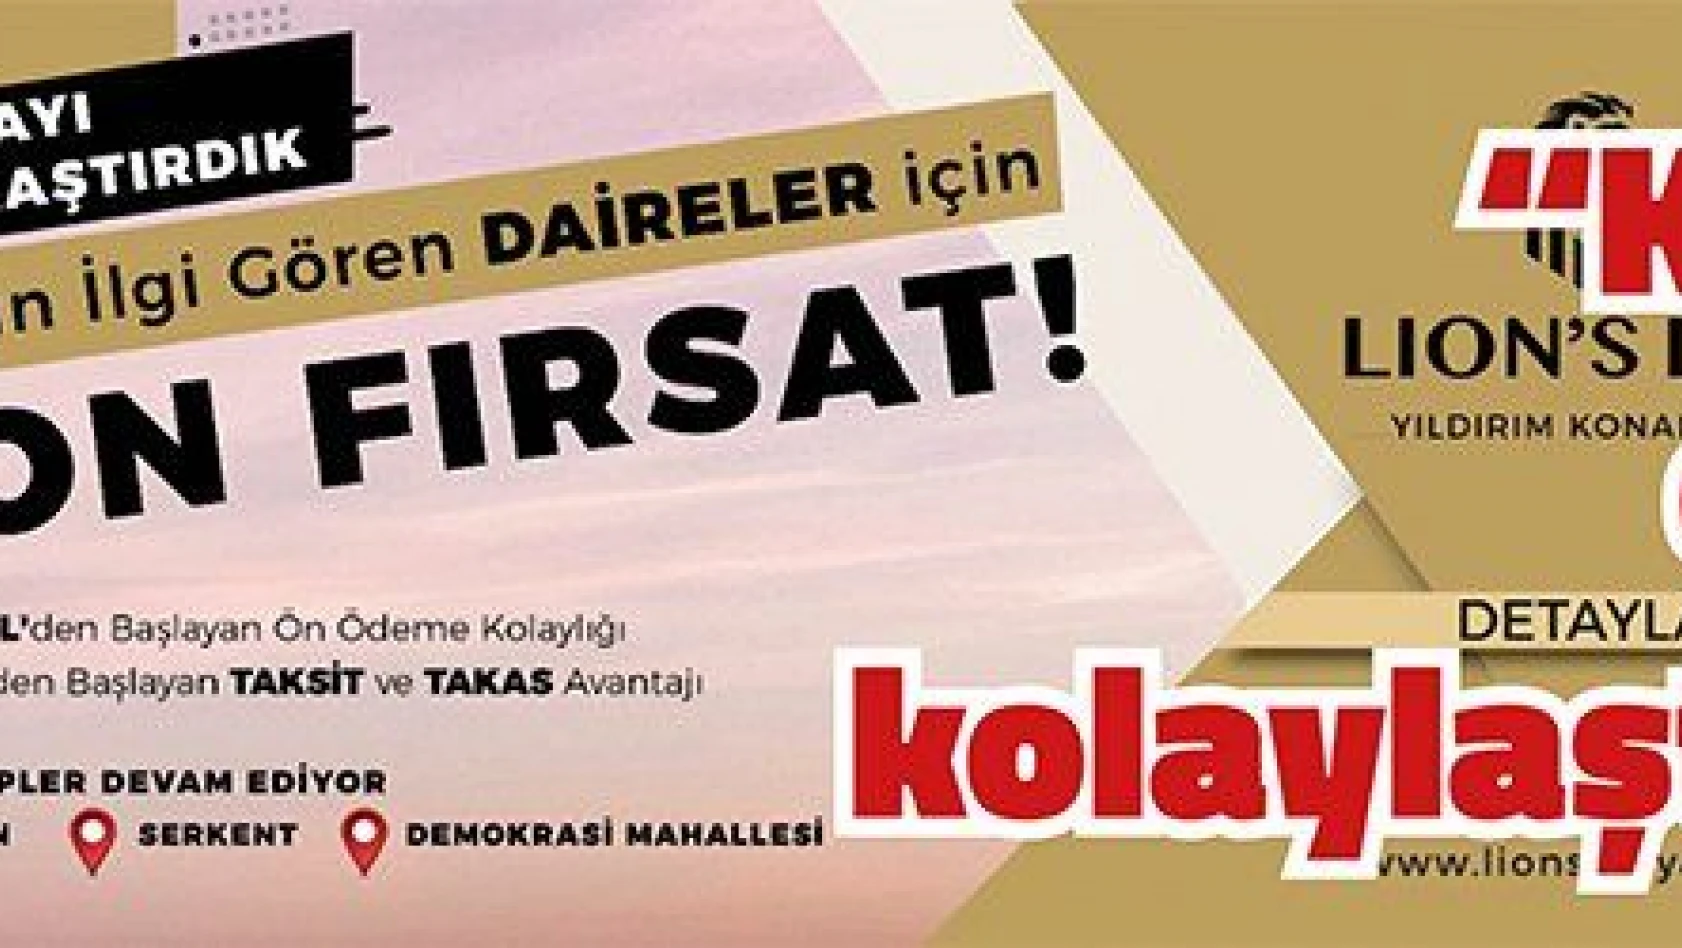  'Kayseri'de ev almayı kolaylaştırıyoruz' kampanyasına yoğun ilgi